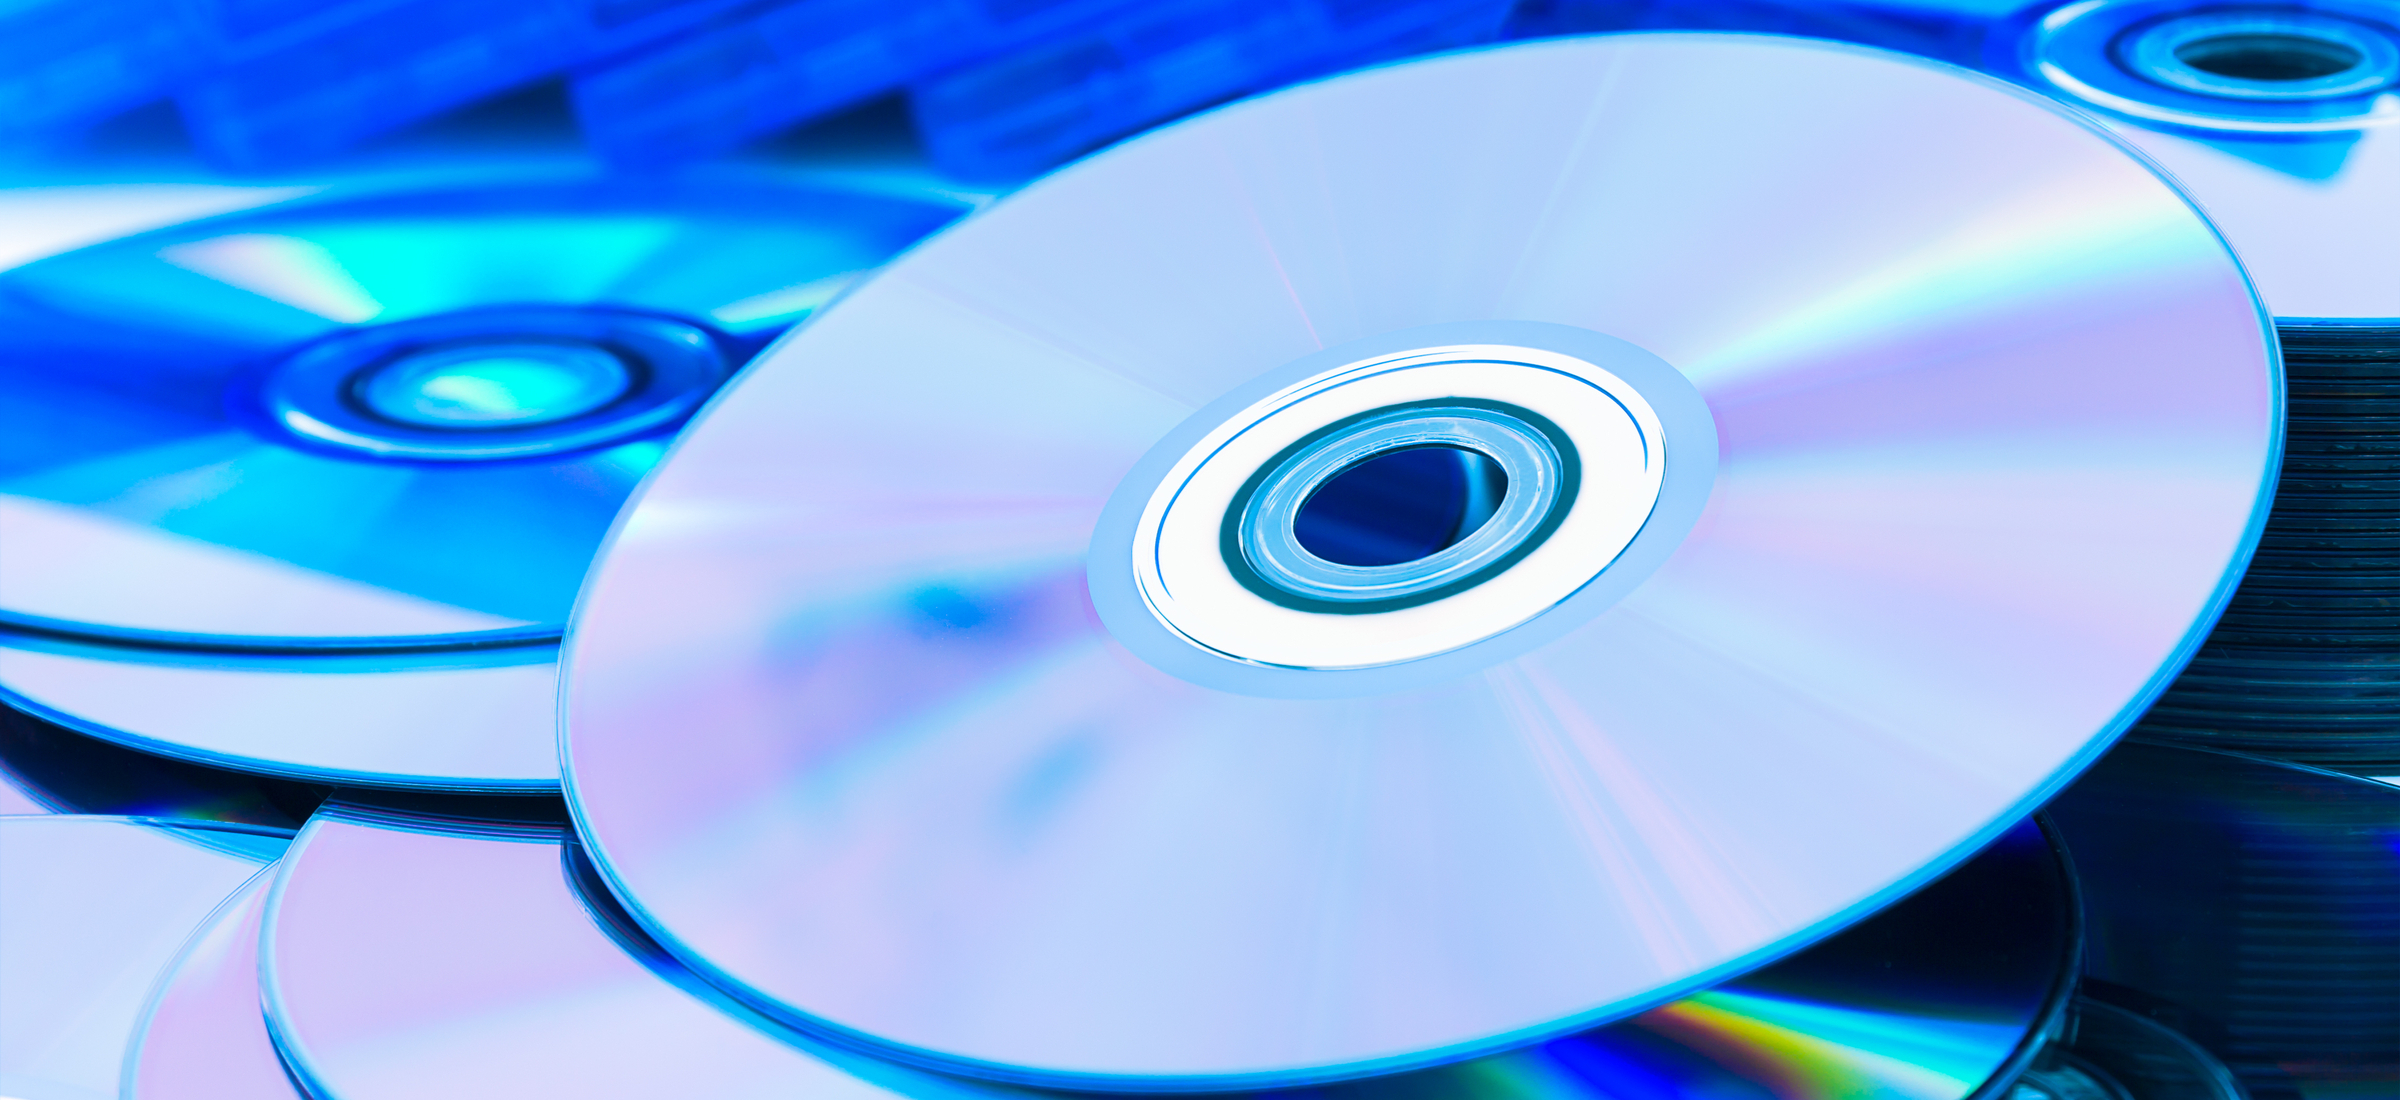 Cd blu. CD Blu ray. Компакт диск. Оптические лазерные диски. Запись на диски Blu-ray.